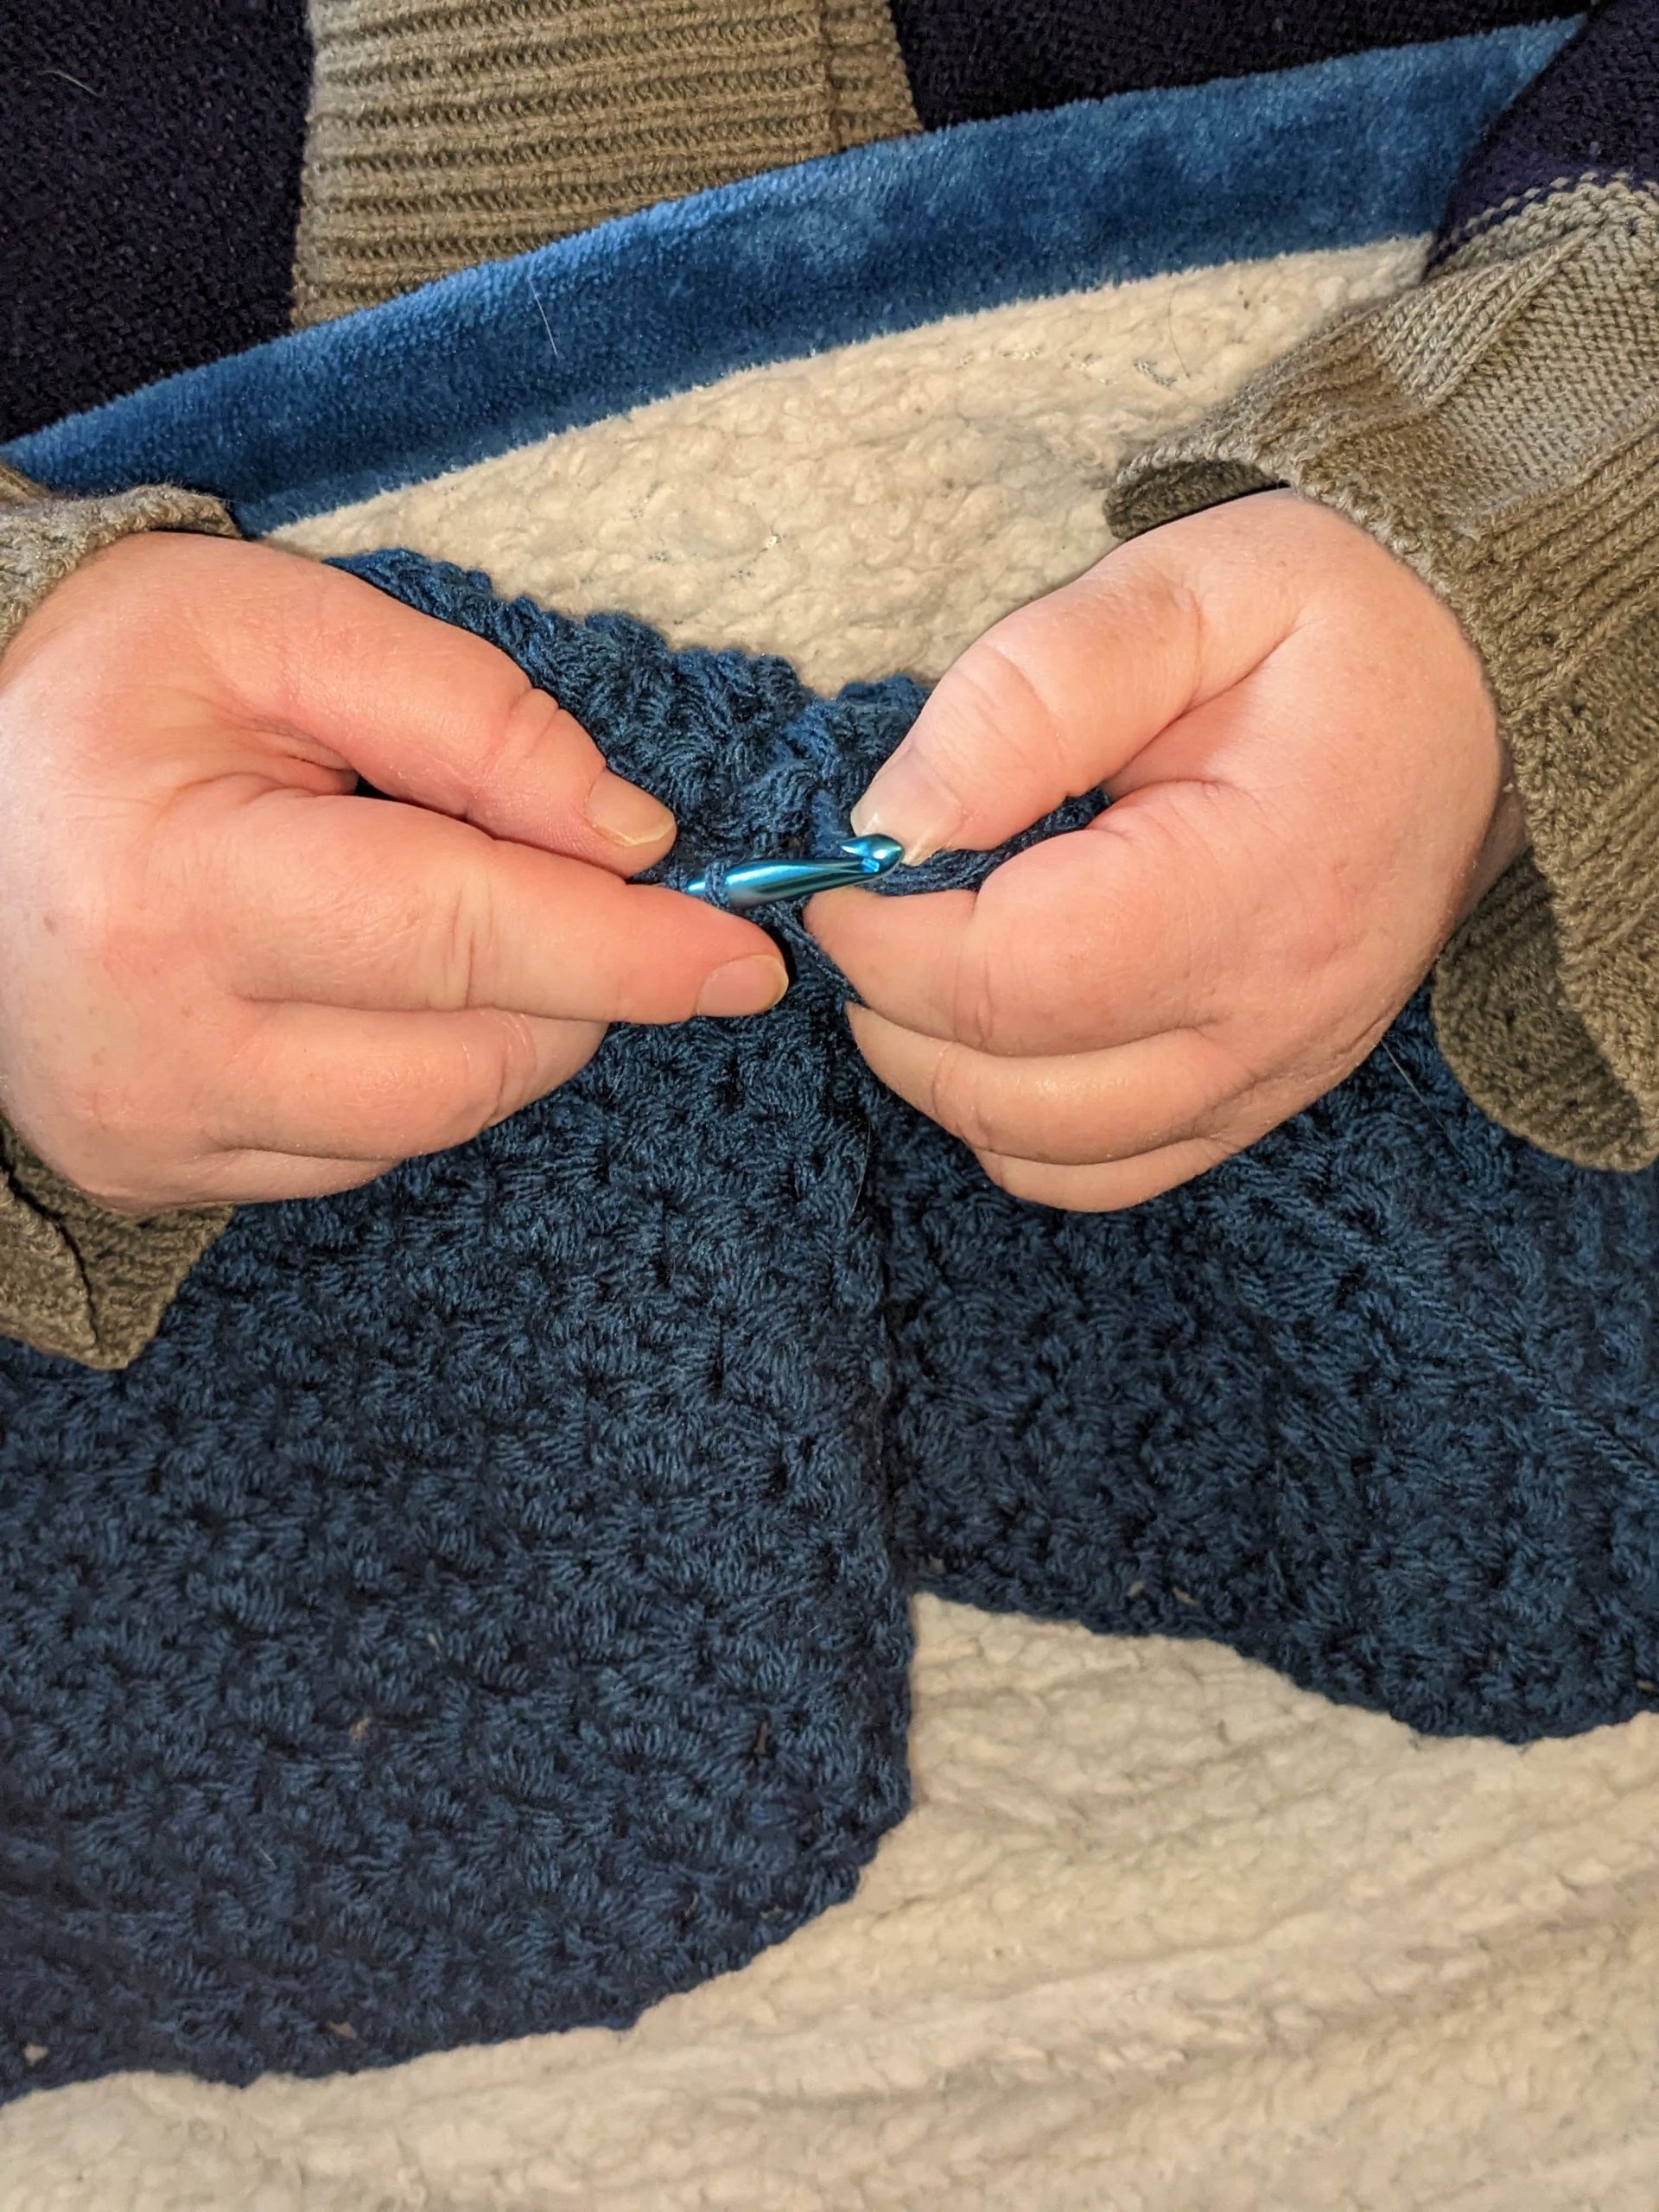 Closeup of hands crocheting a dark blue garment